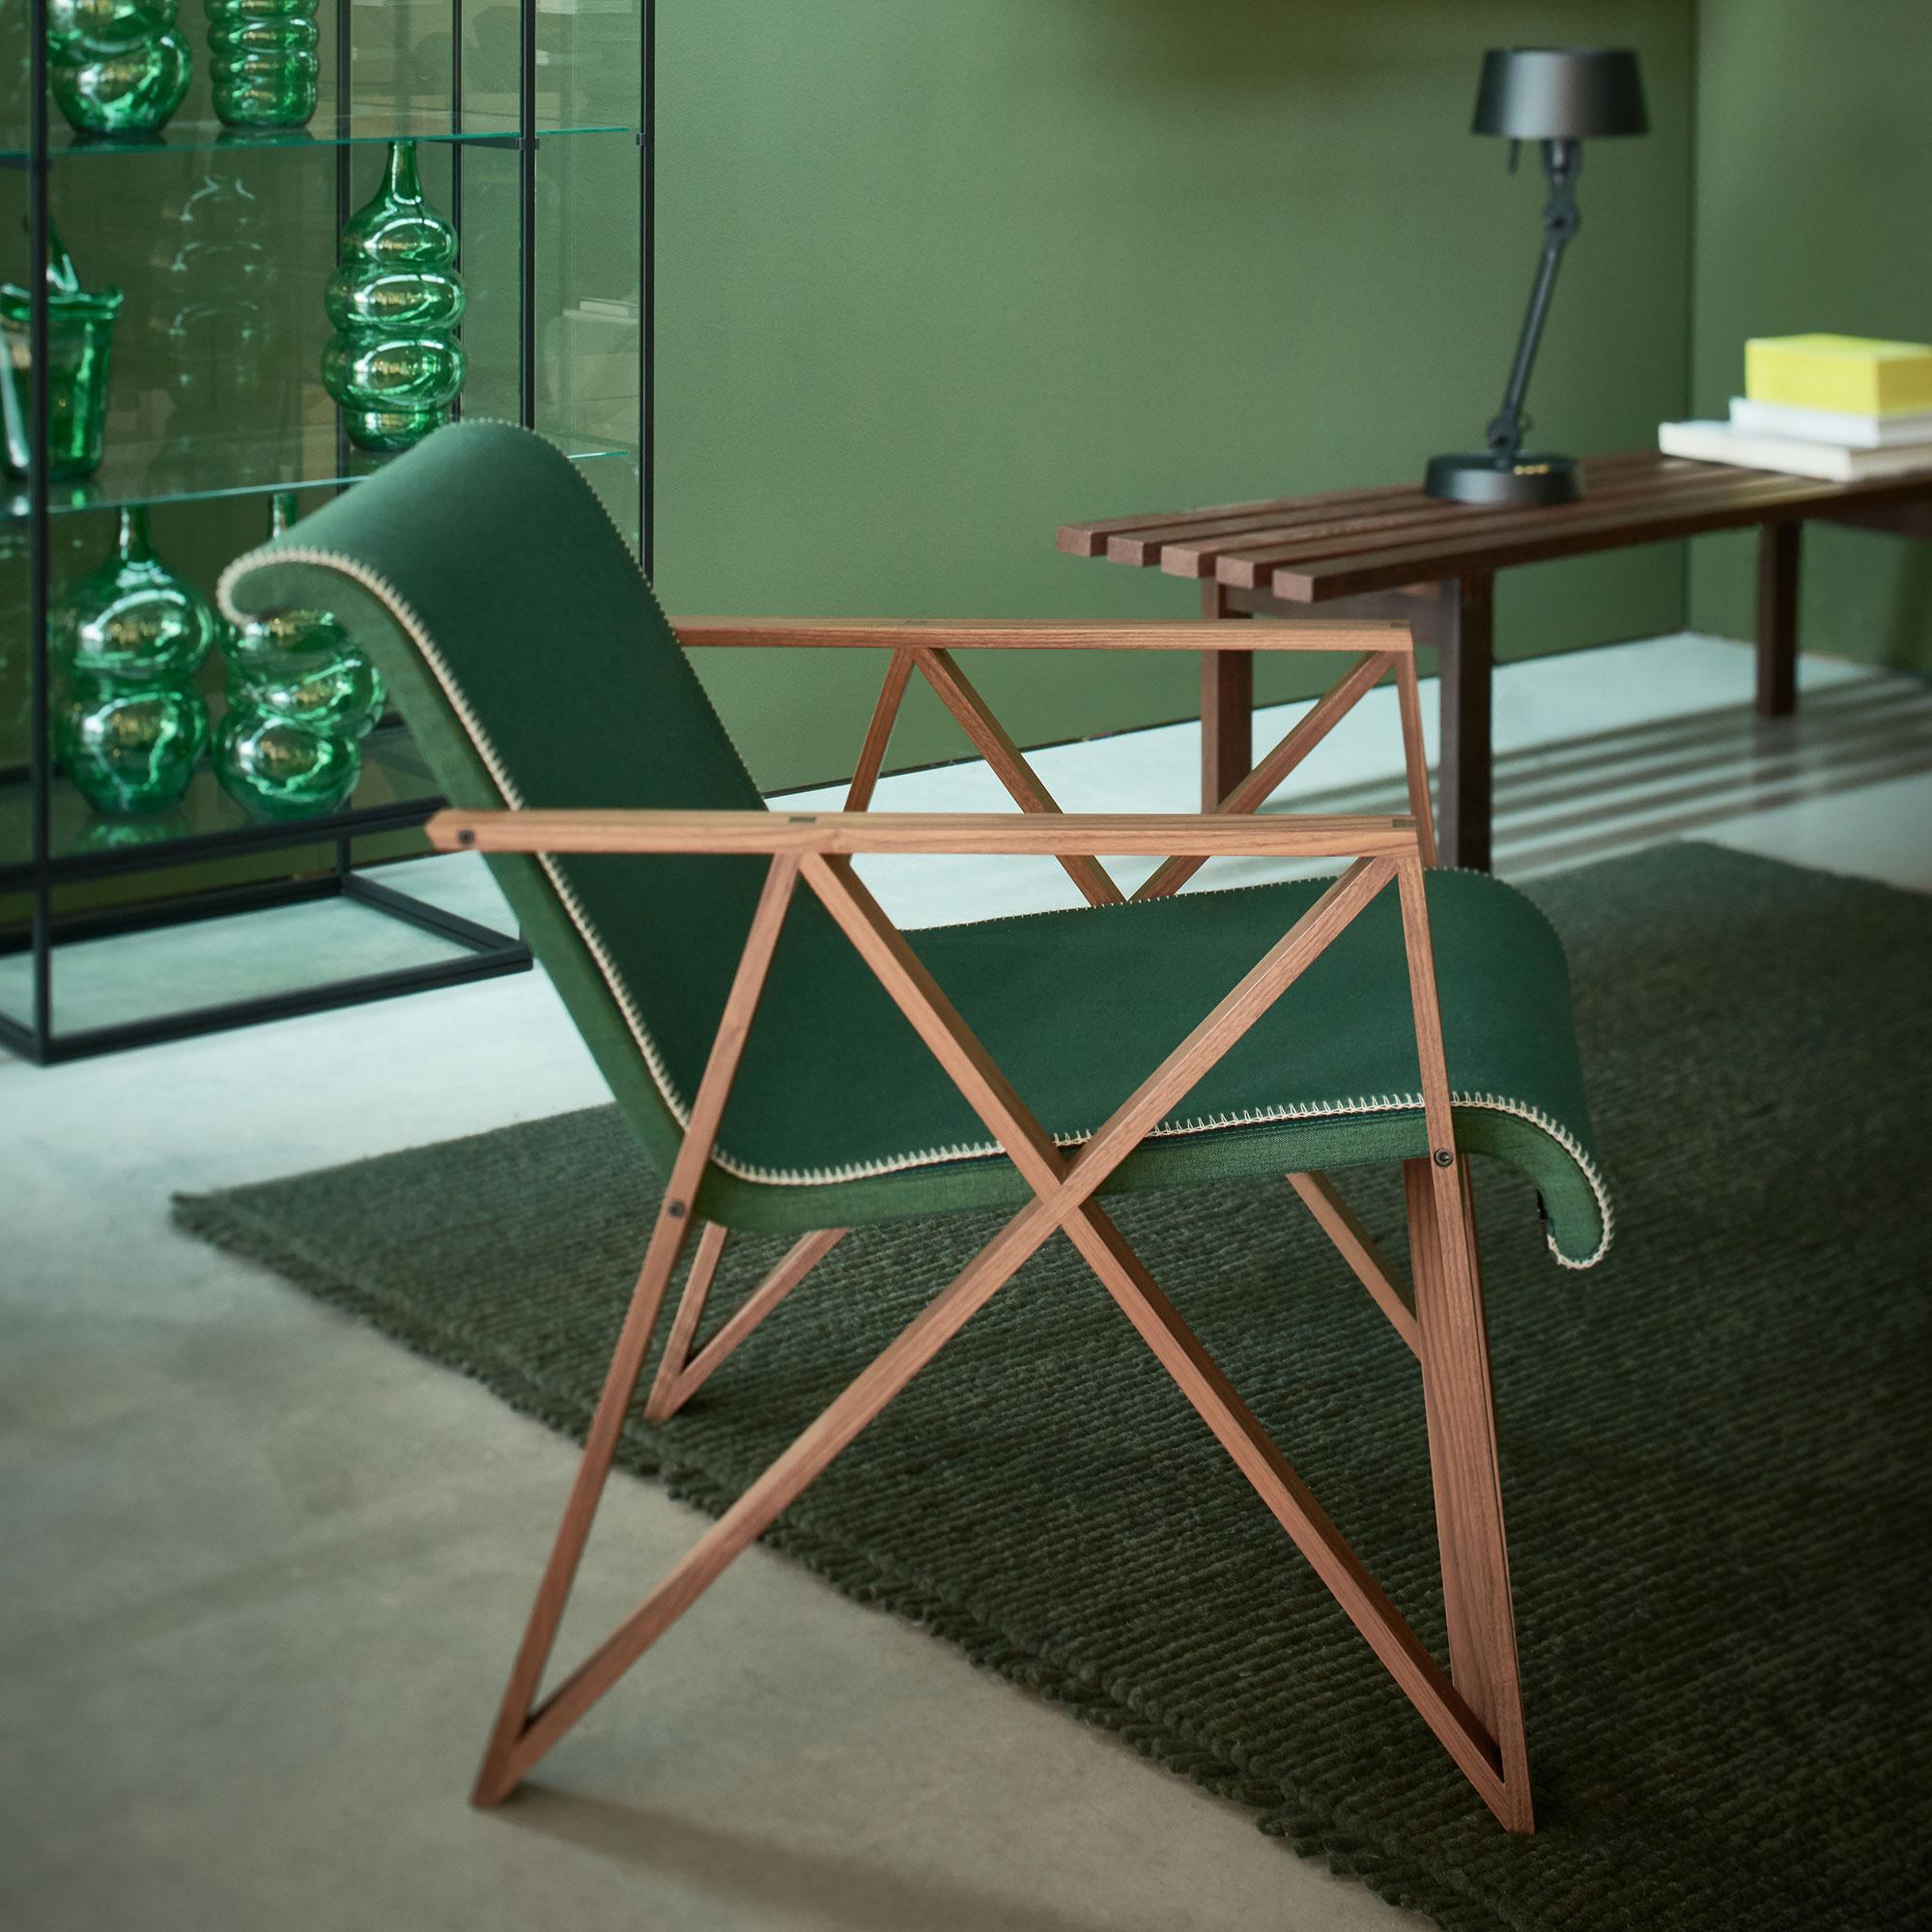 green felt chair